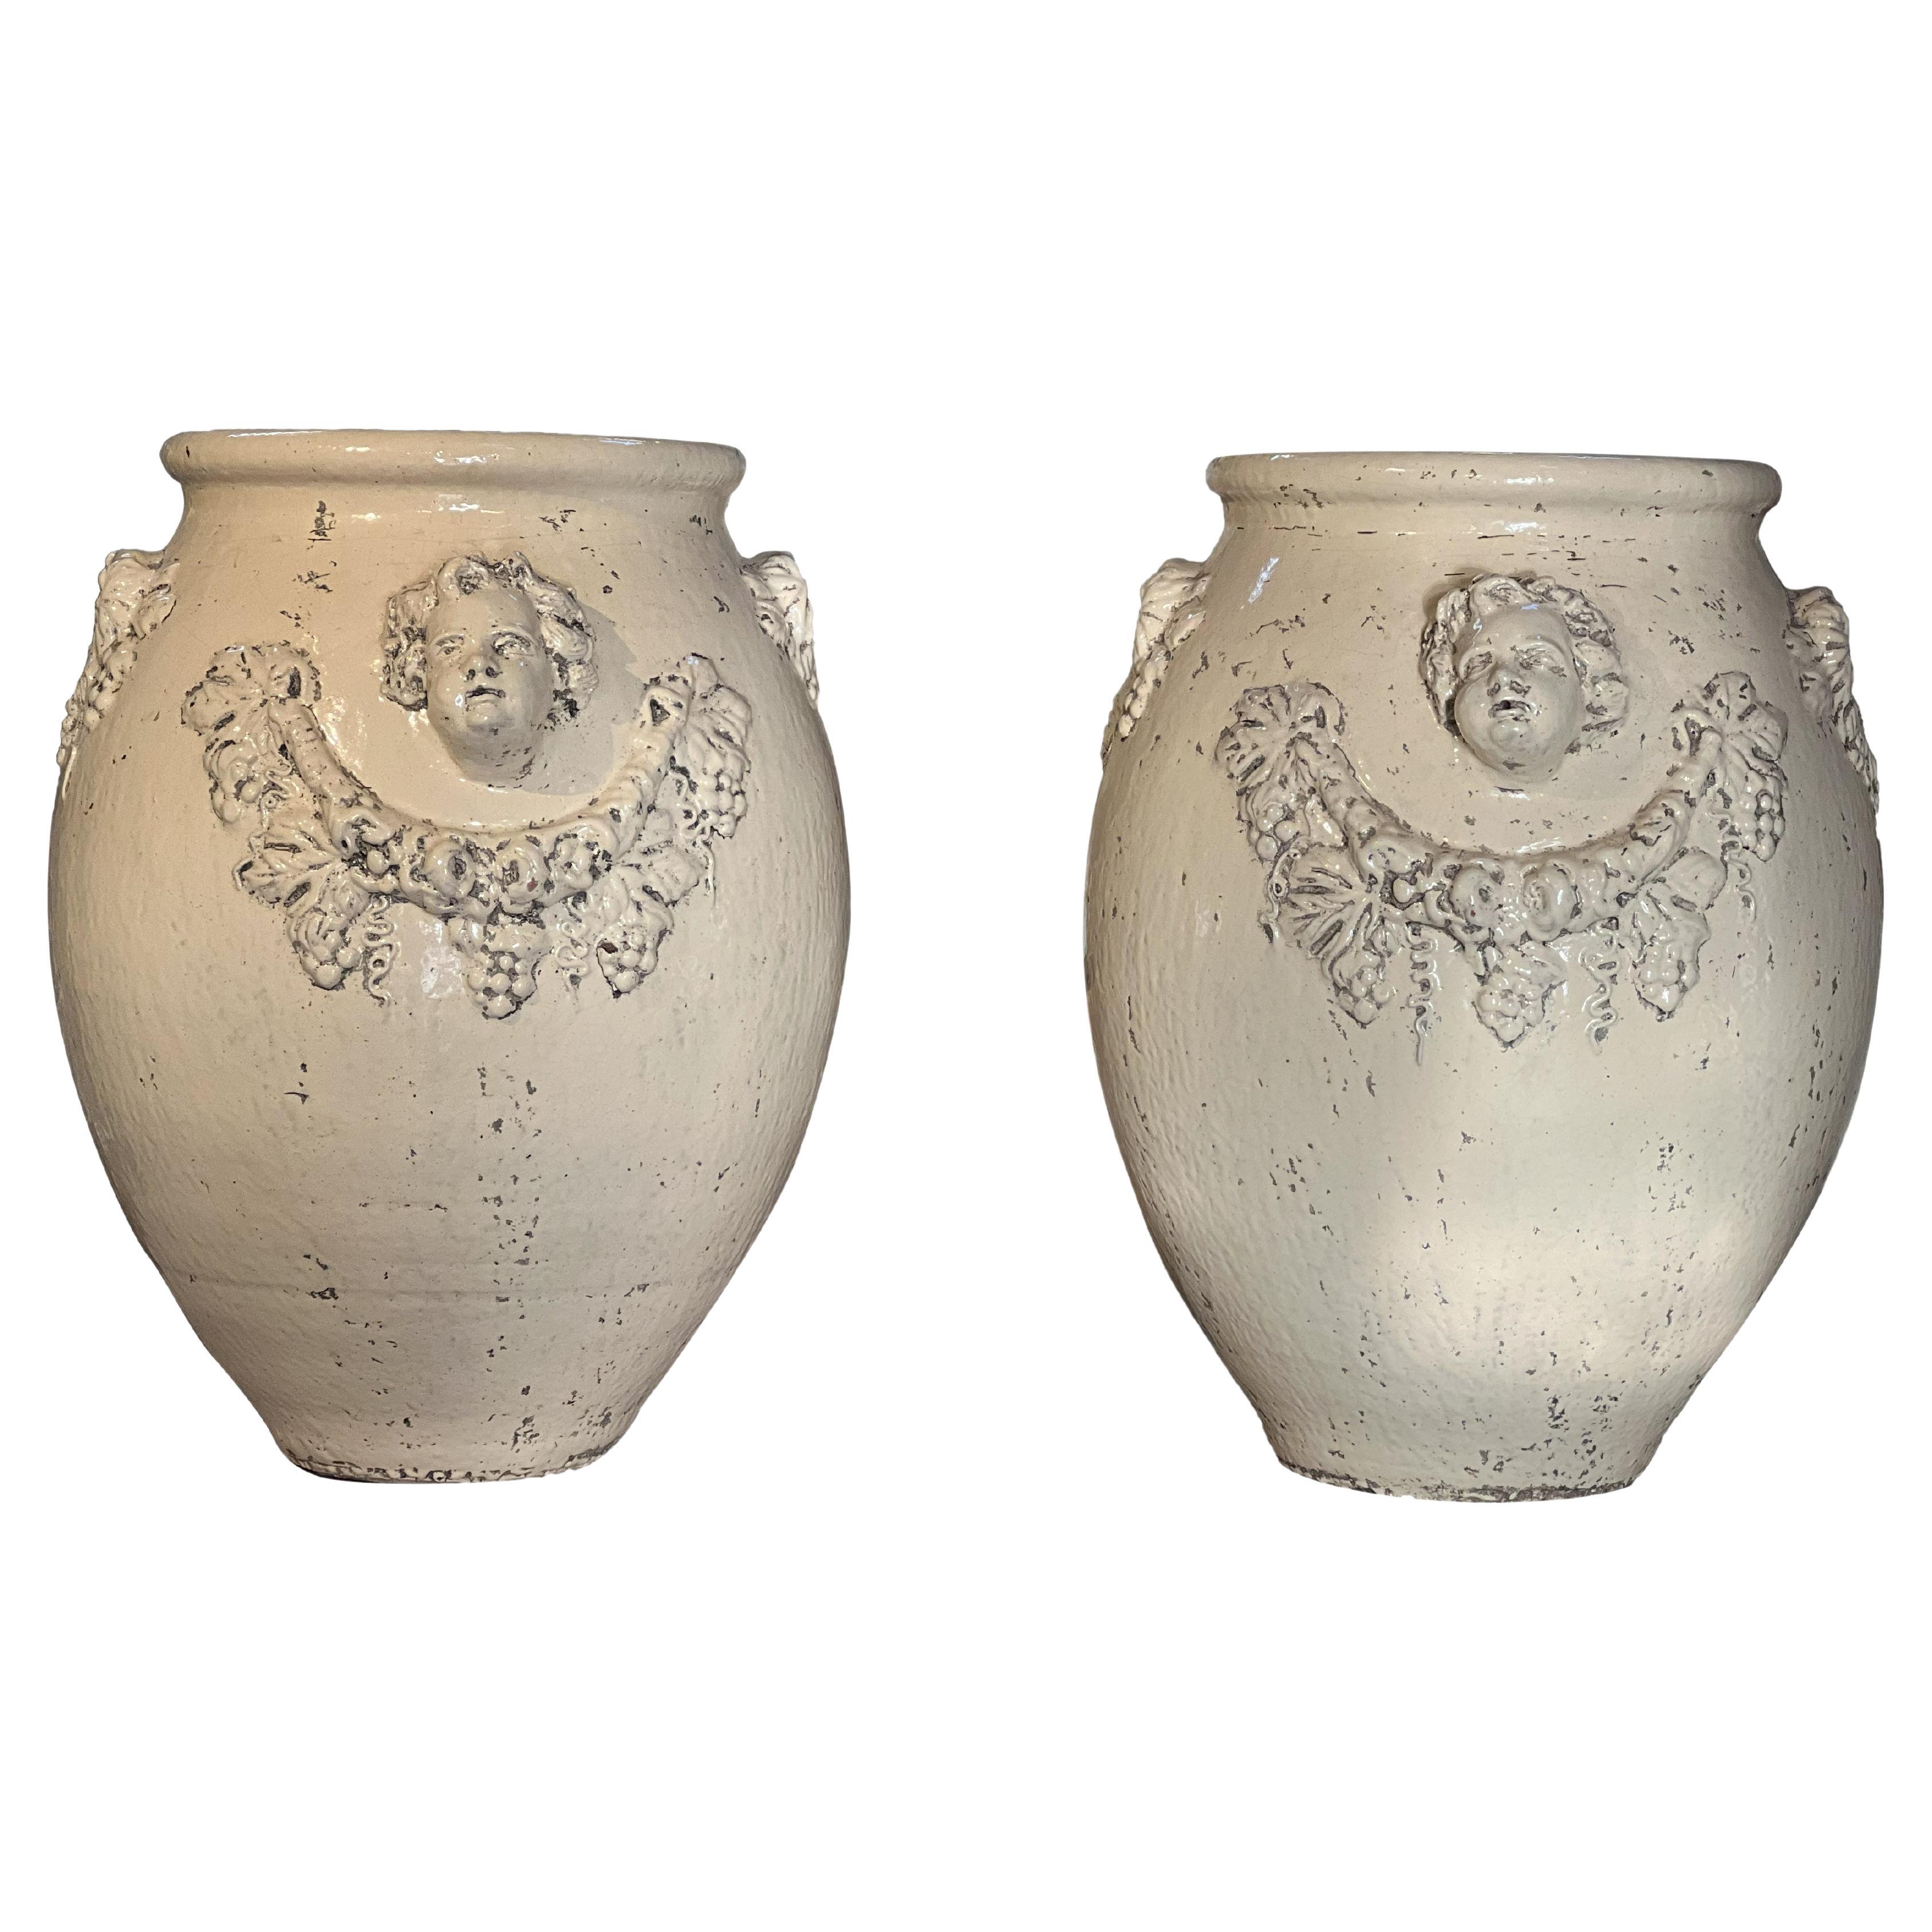 19th Century Italian Antique Pair of Terracotta Glazed Garden Urns with Cherubs